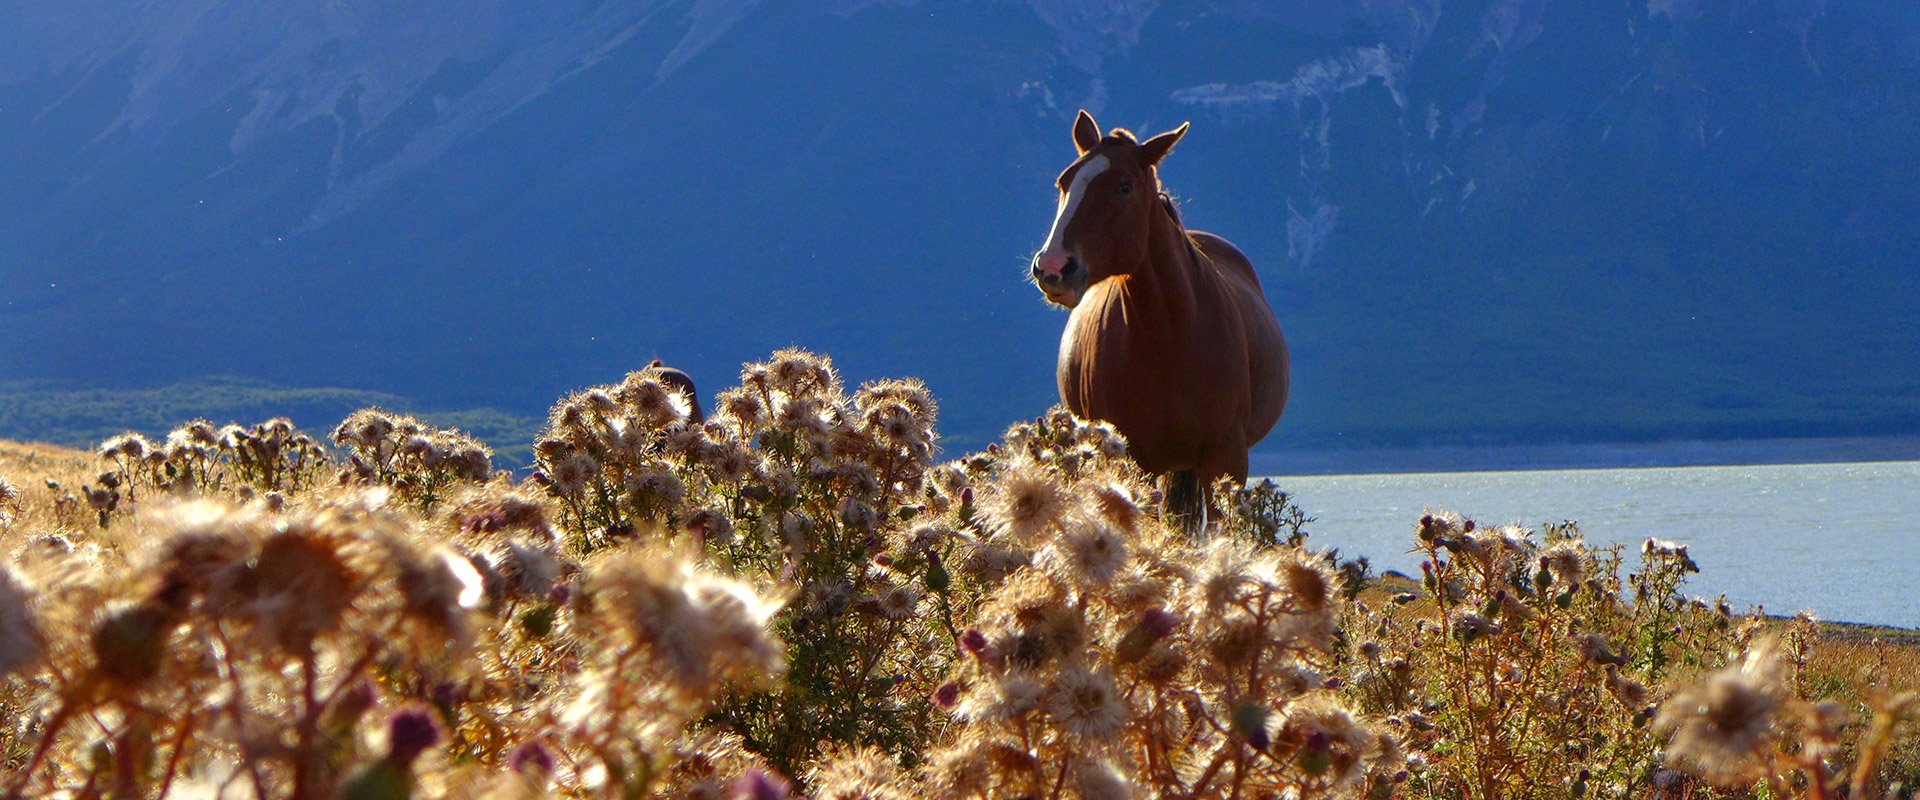 argentine estancia nibepo aike cheval nature faune campagne lac montagne dépaysement balade randonnée parc des glaciers patagonie